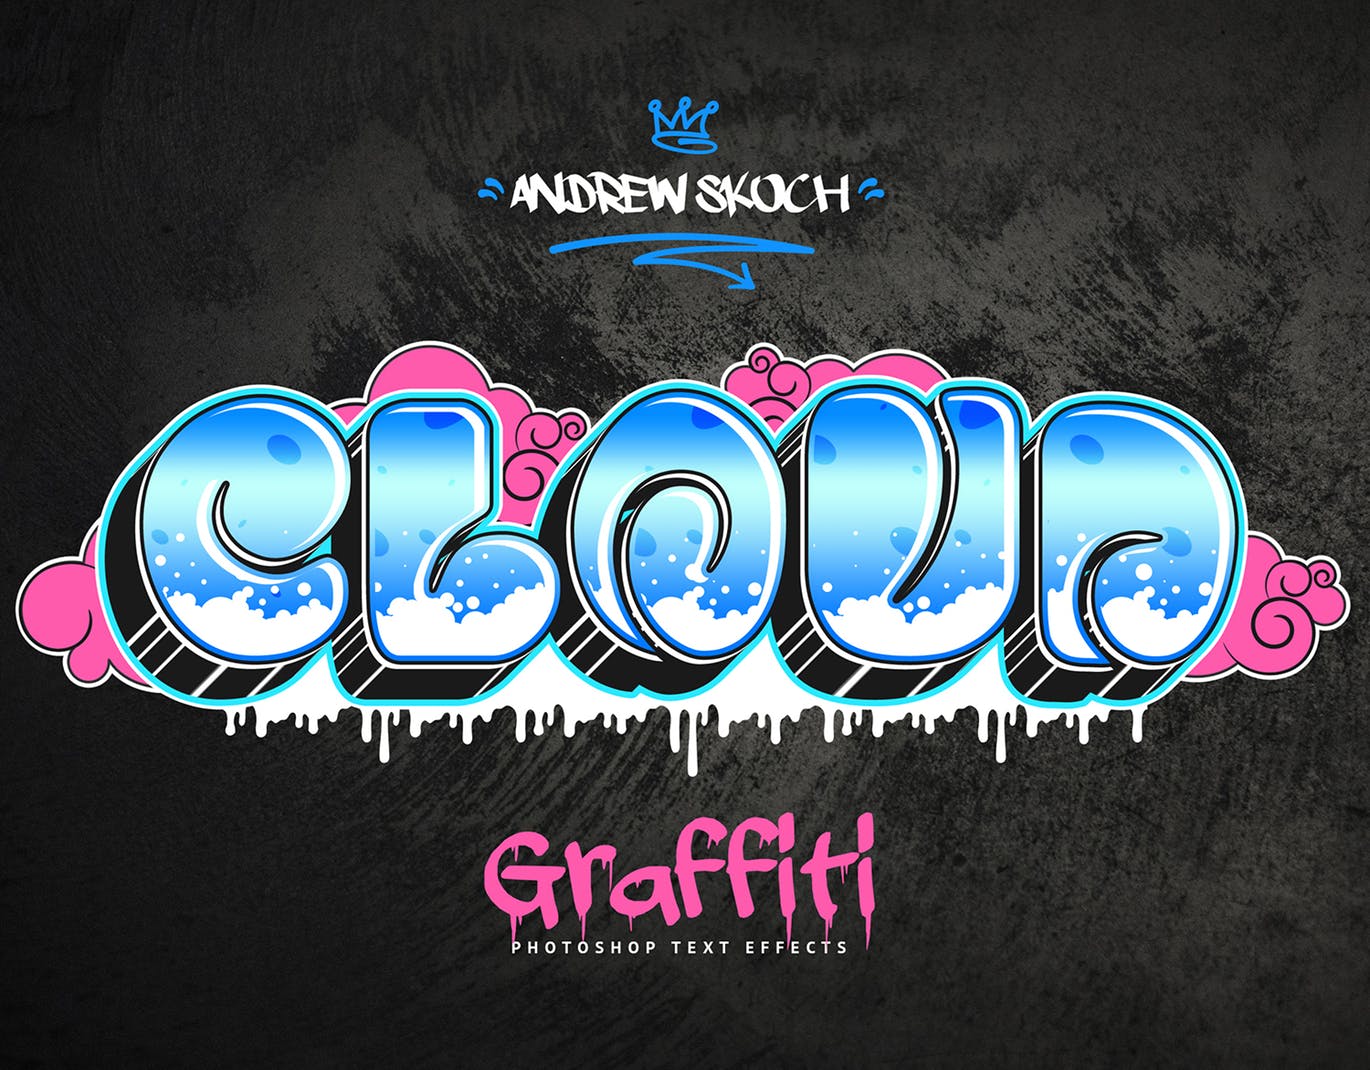 街头涂鸦文字效果PSD分层模板v3 Graffiti Text Effects Vol.3插图(3)